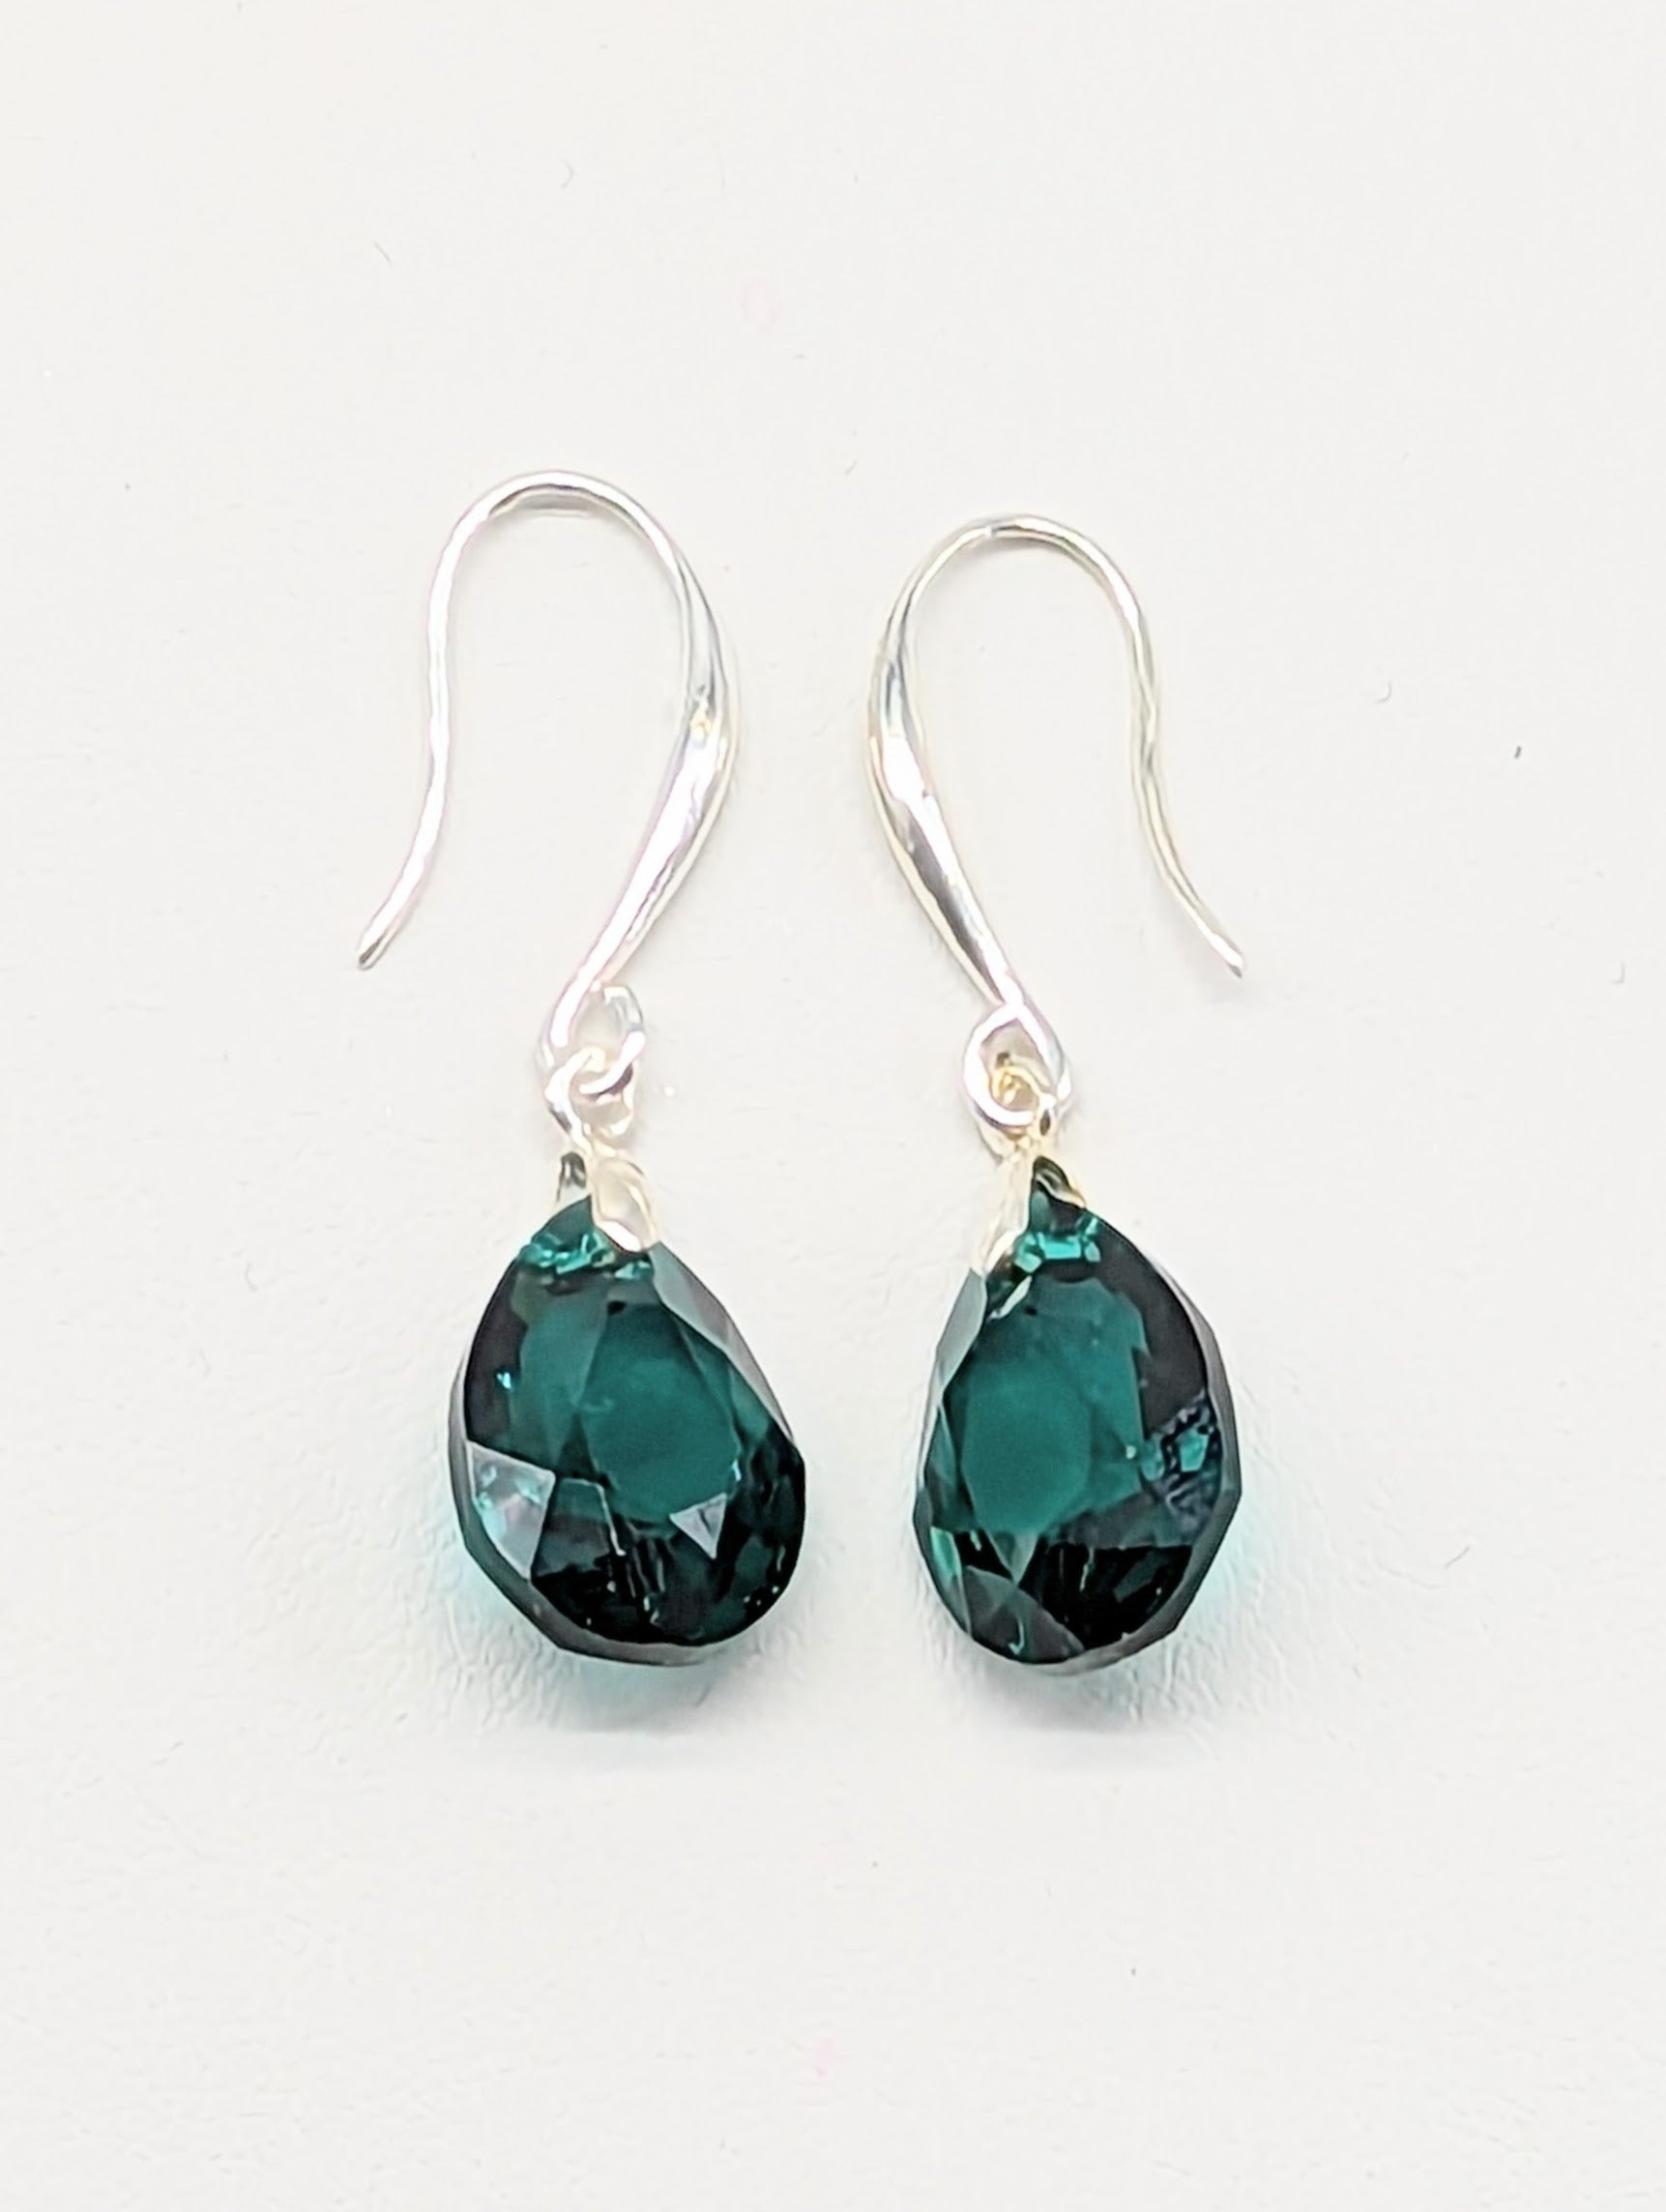 "Emerald" Austrian Crystal Earrings on Sterling Silver